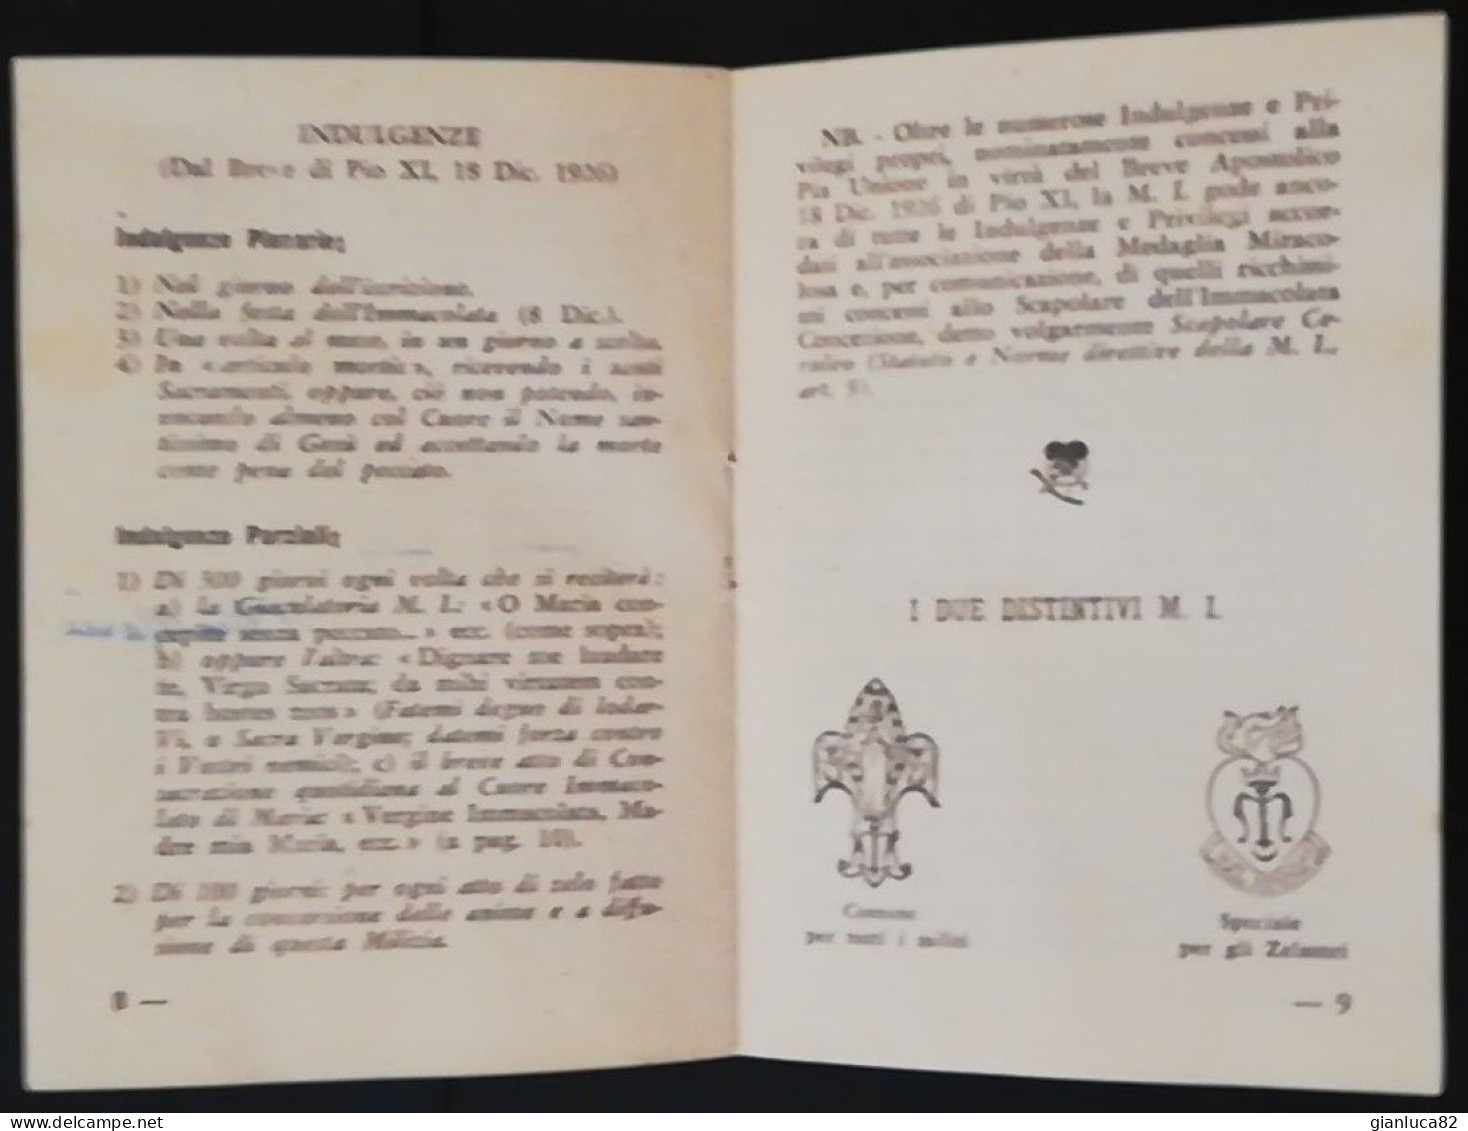 Libretto Religioso “Milizia Dell’Immacolata” Con Scheda Di Iscrizione 1953 (Relig27) Come Da Foto - Libri Antichi